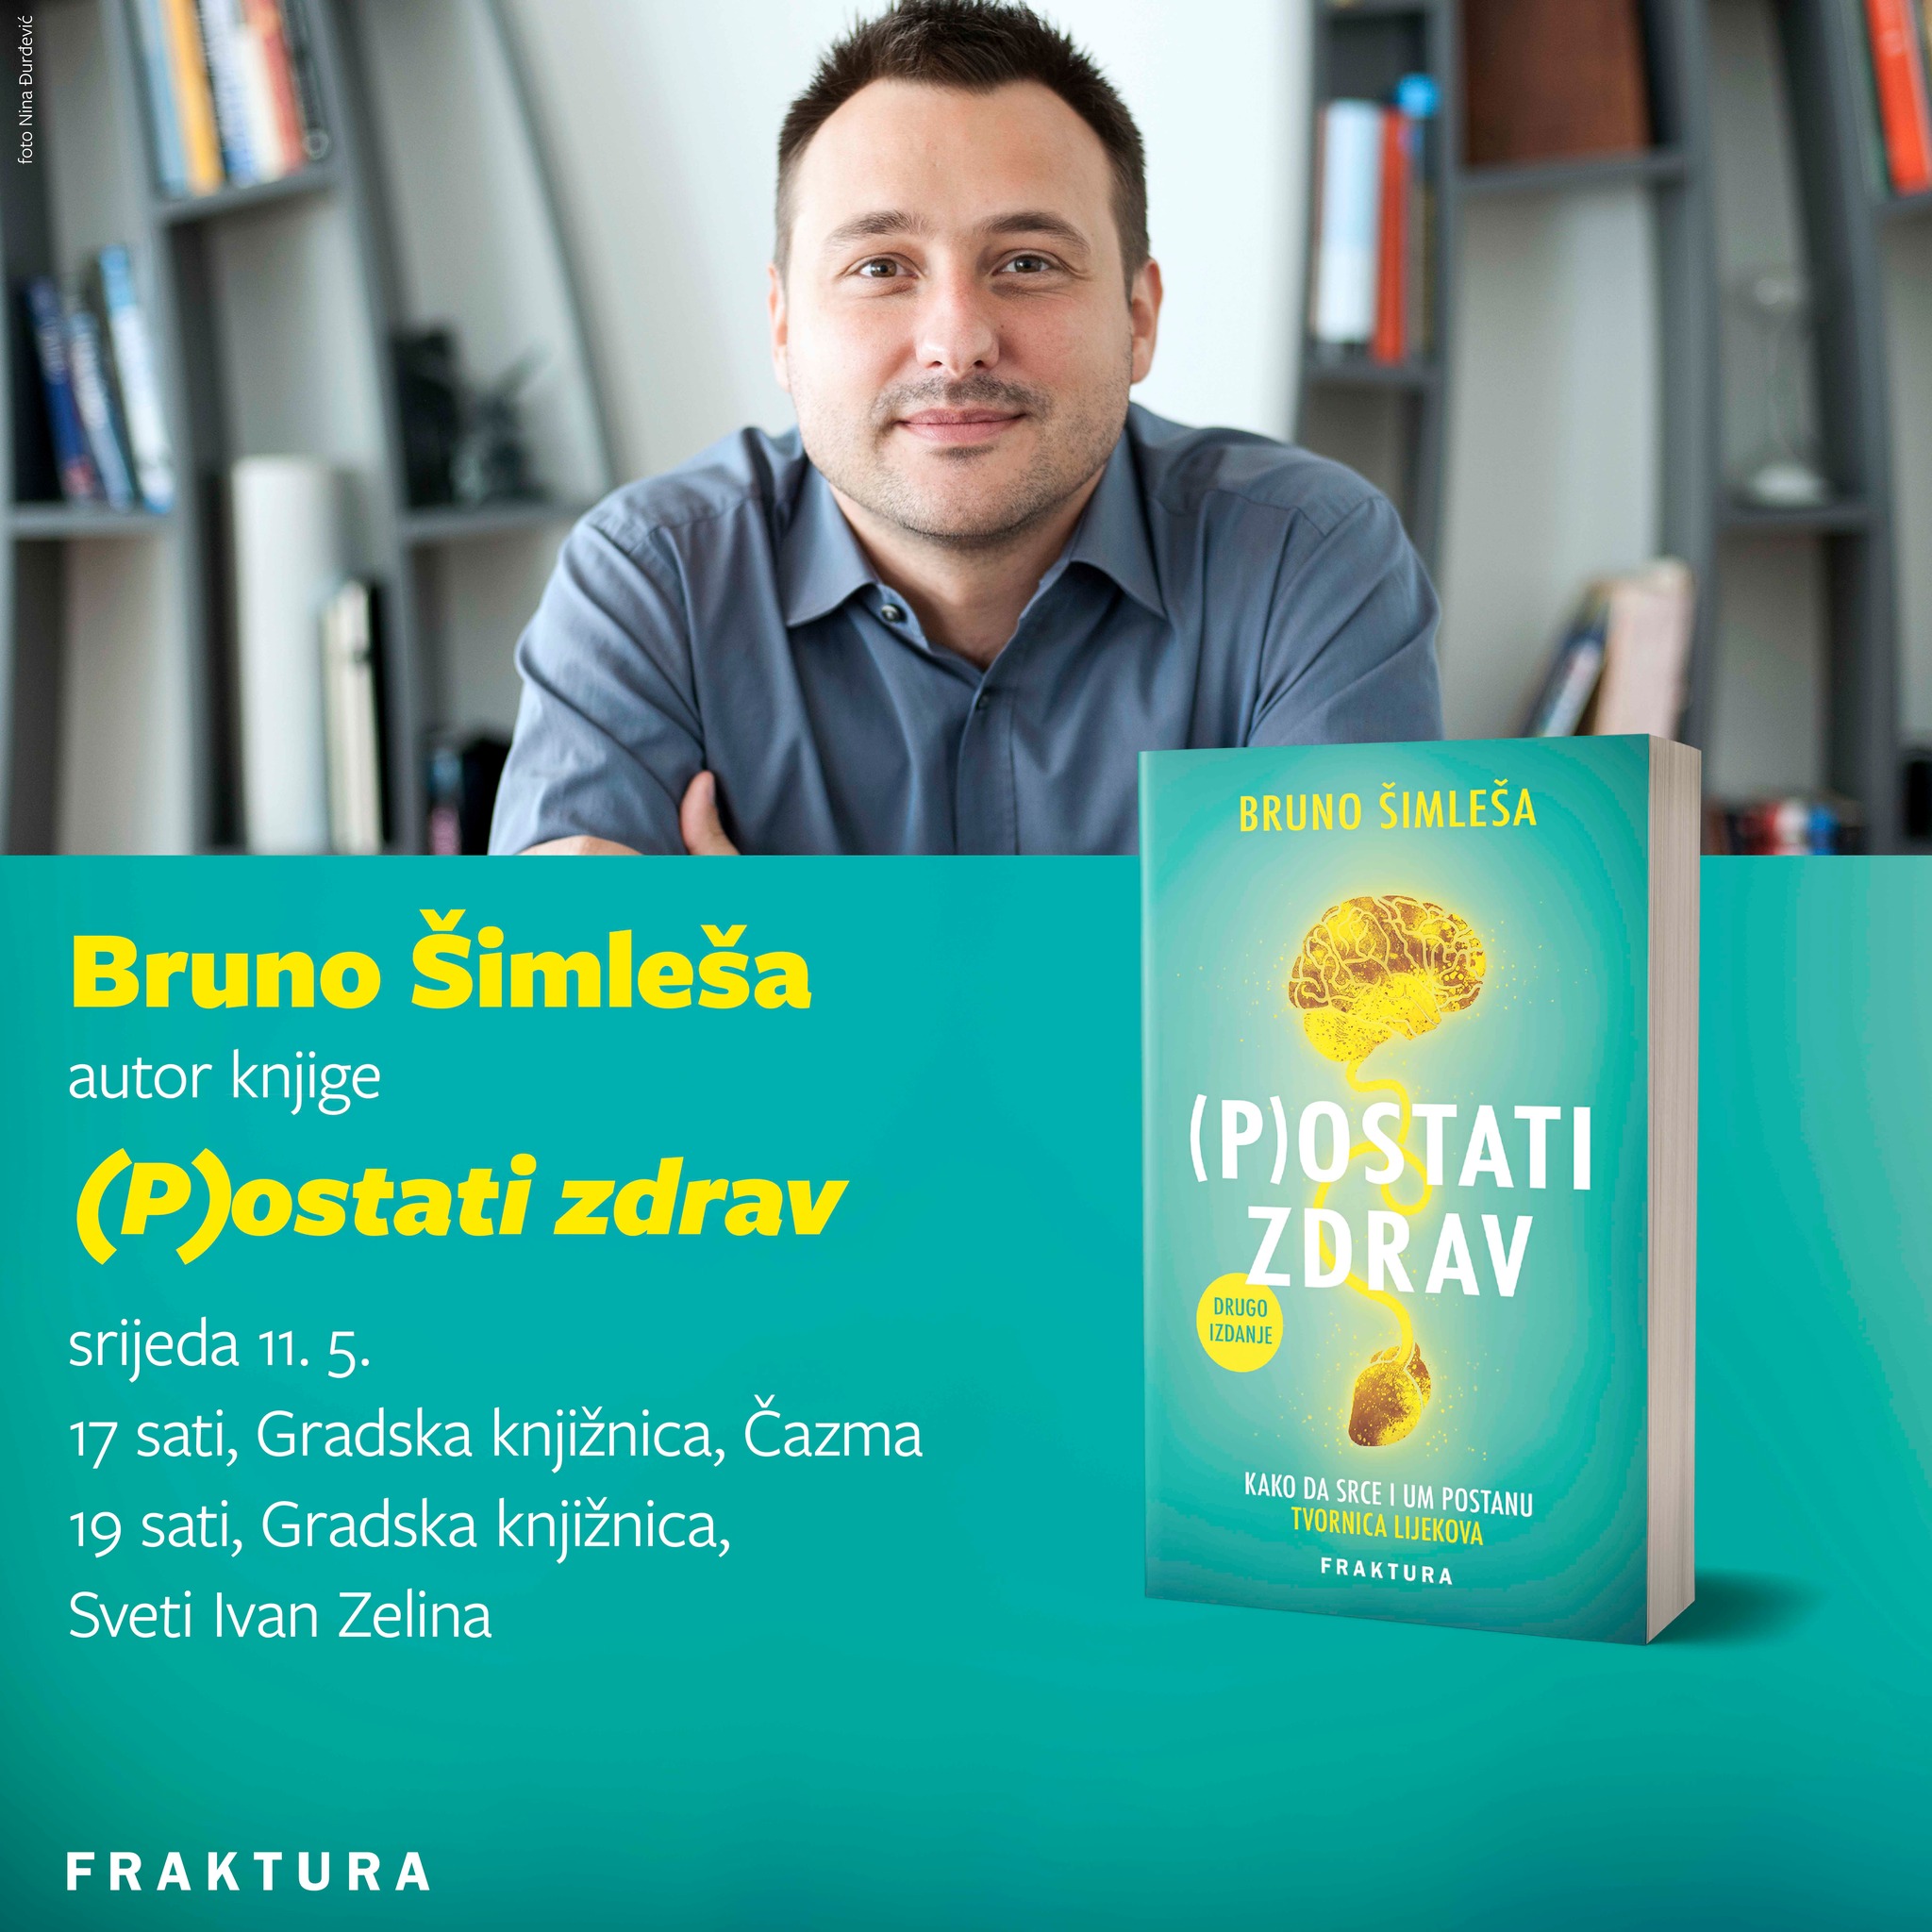 Bruno Šimleša “(P)ostati zdrav: kako da srce i um postanu tvornica lijekova”